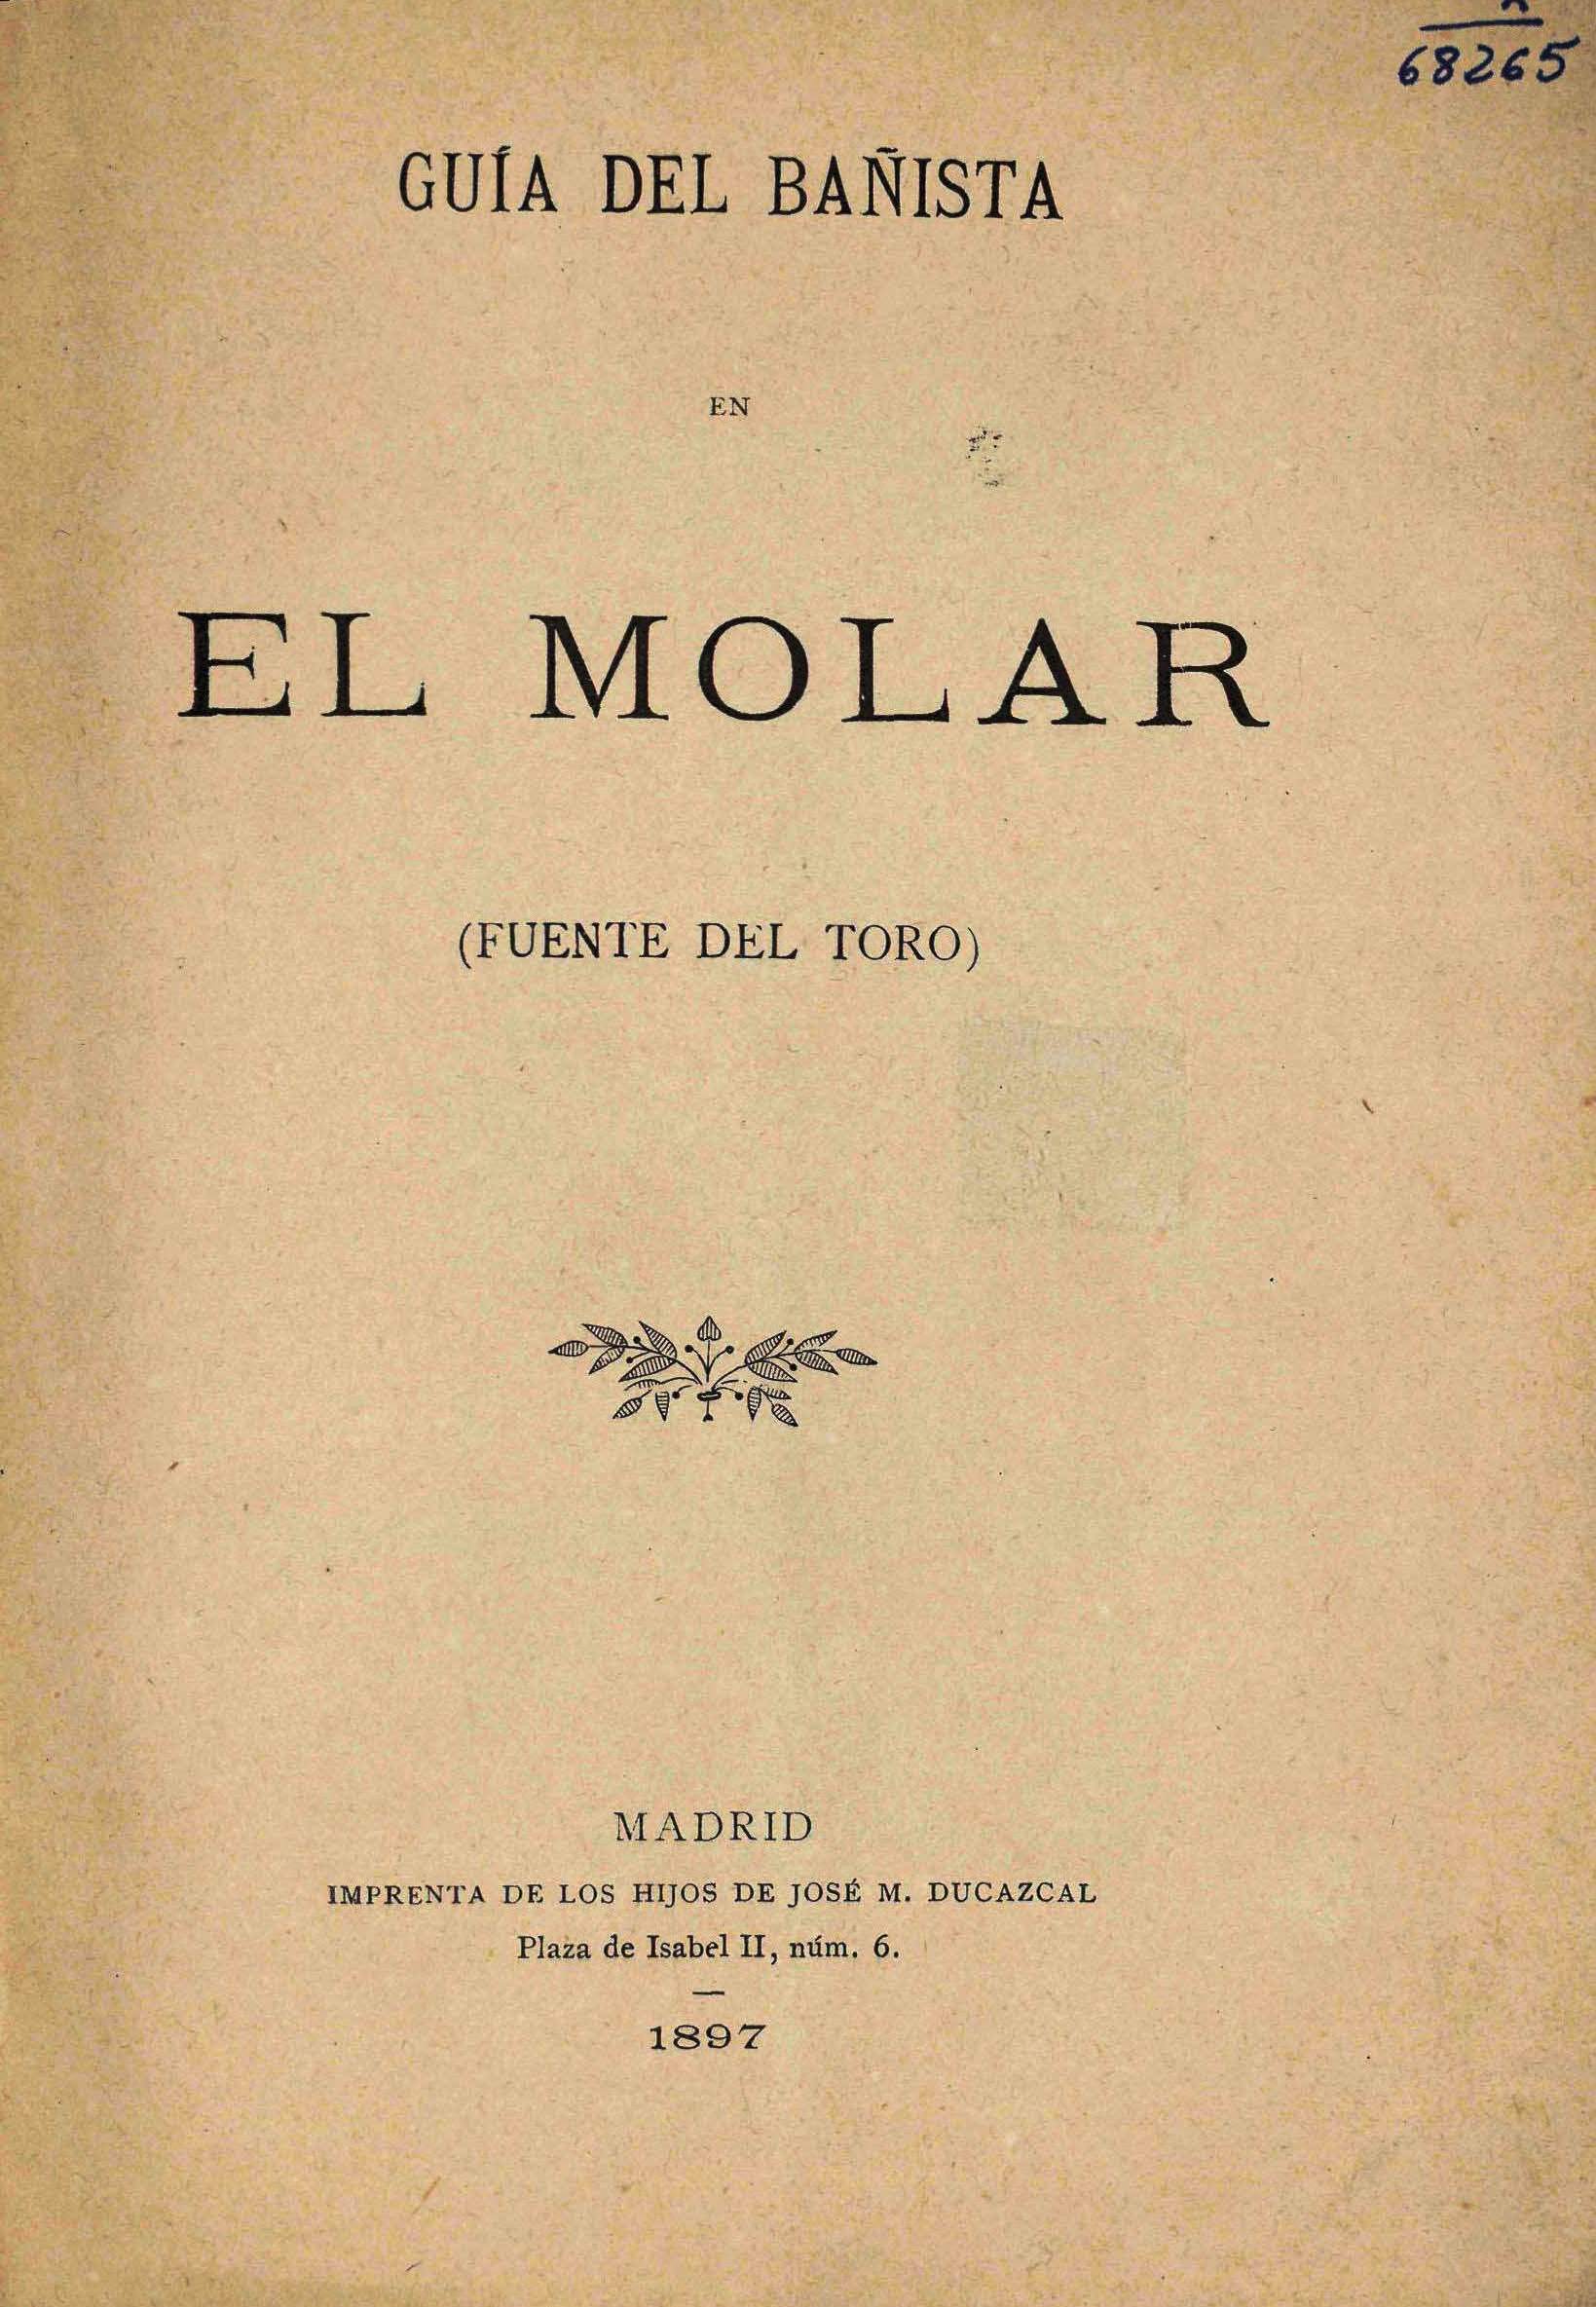 Portada del libro "Guía del bañista en El Molar" (1897)